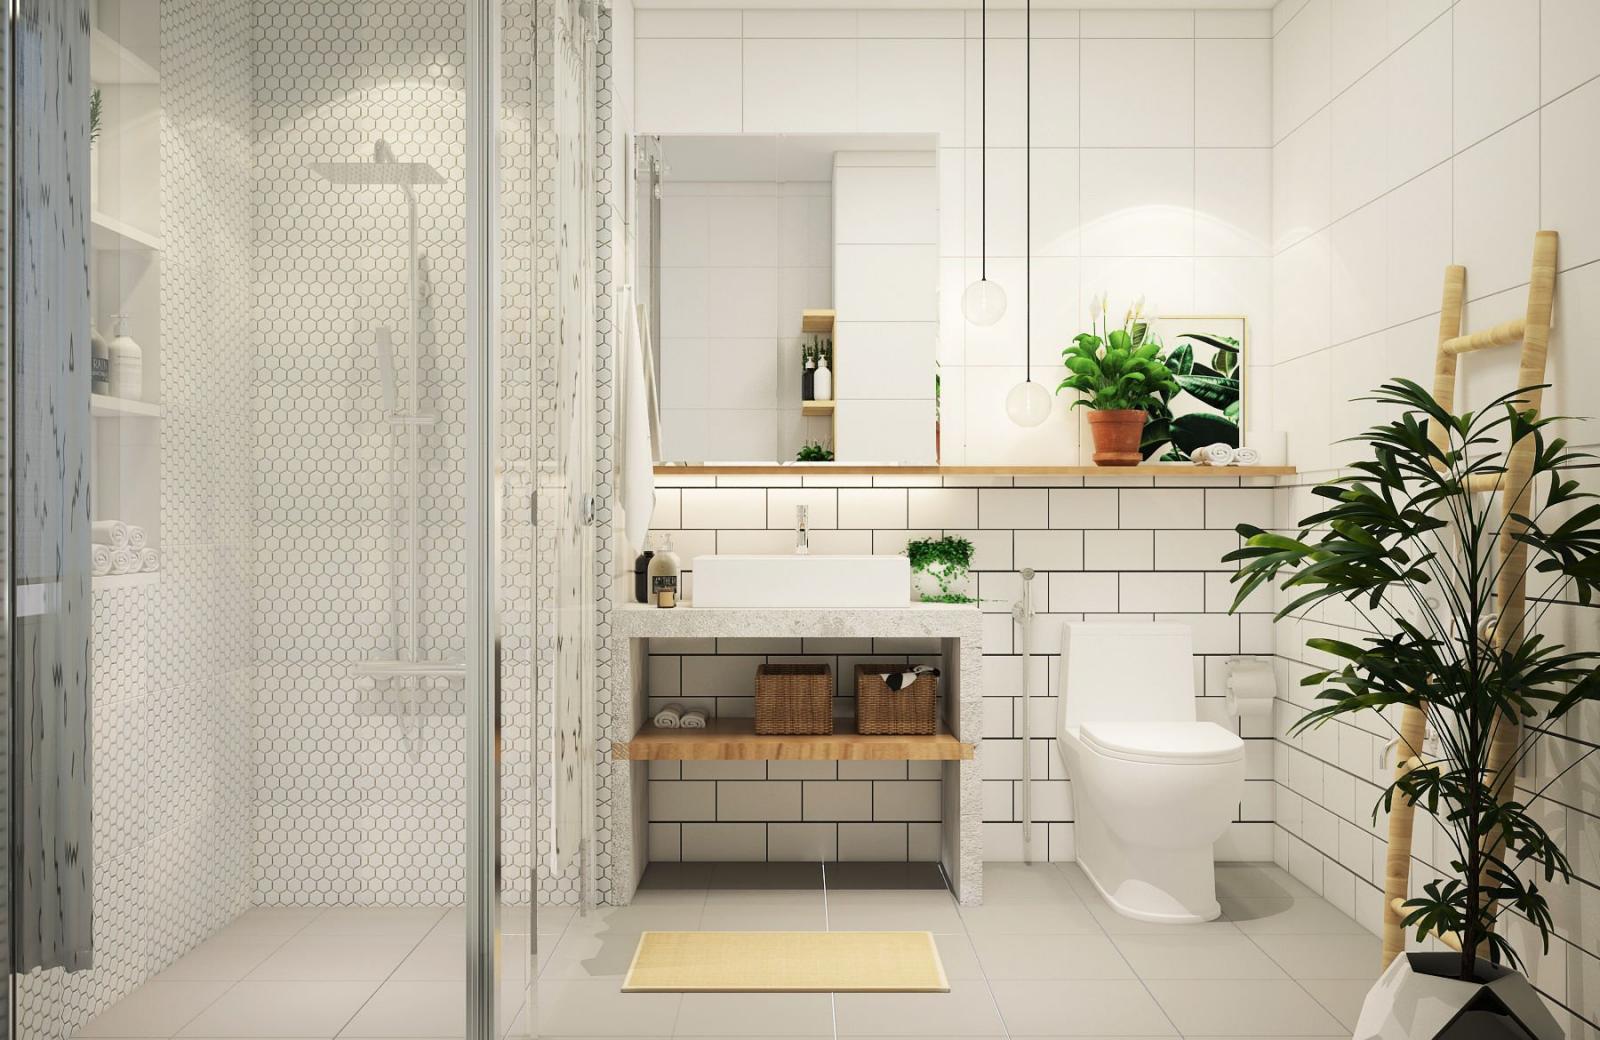 Phòng tắm và vệ sinh trong nhà ống 2,5 tầng được tách biệt rõ bởi vách kính cường lực trong suốt, tạo cảm giác rộng thoáng hơn so với thực tế.